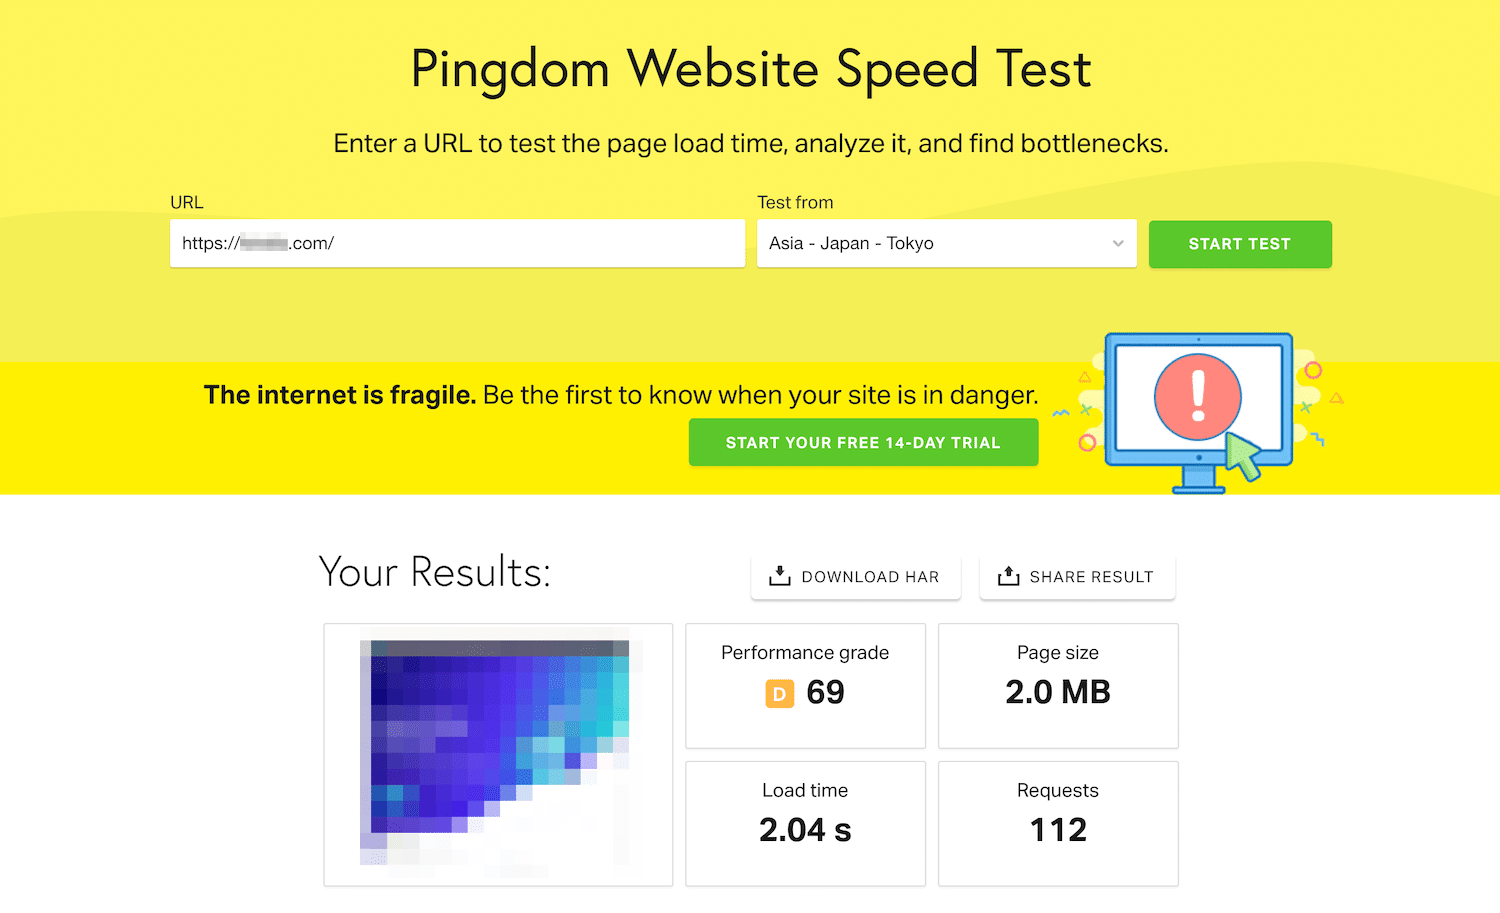 Résultats des tests de vitesse des outils Pingdom